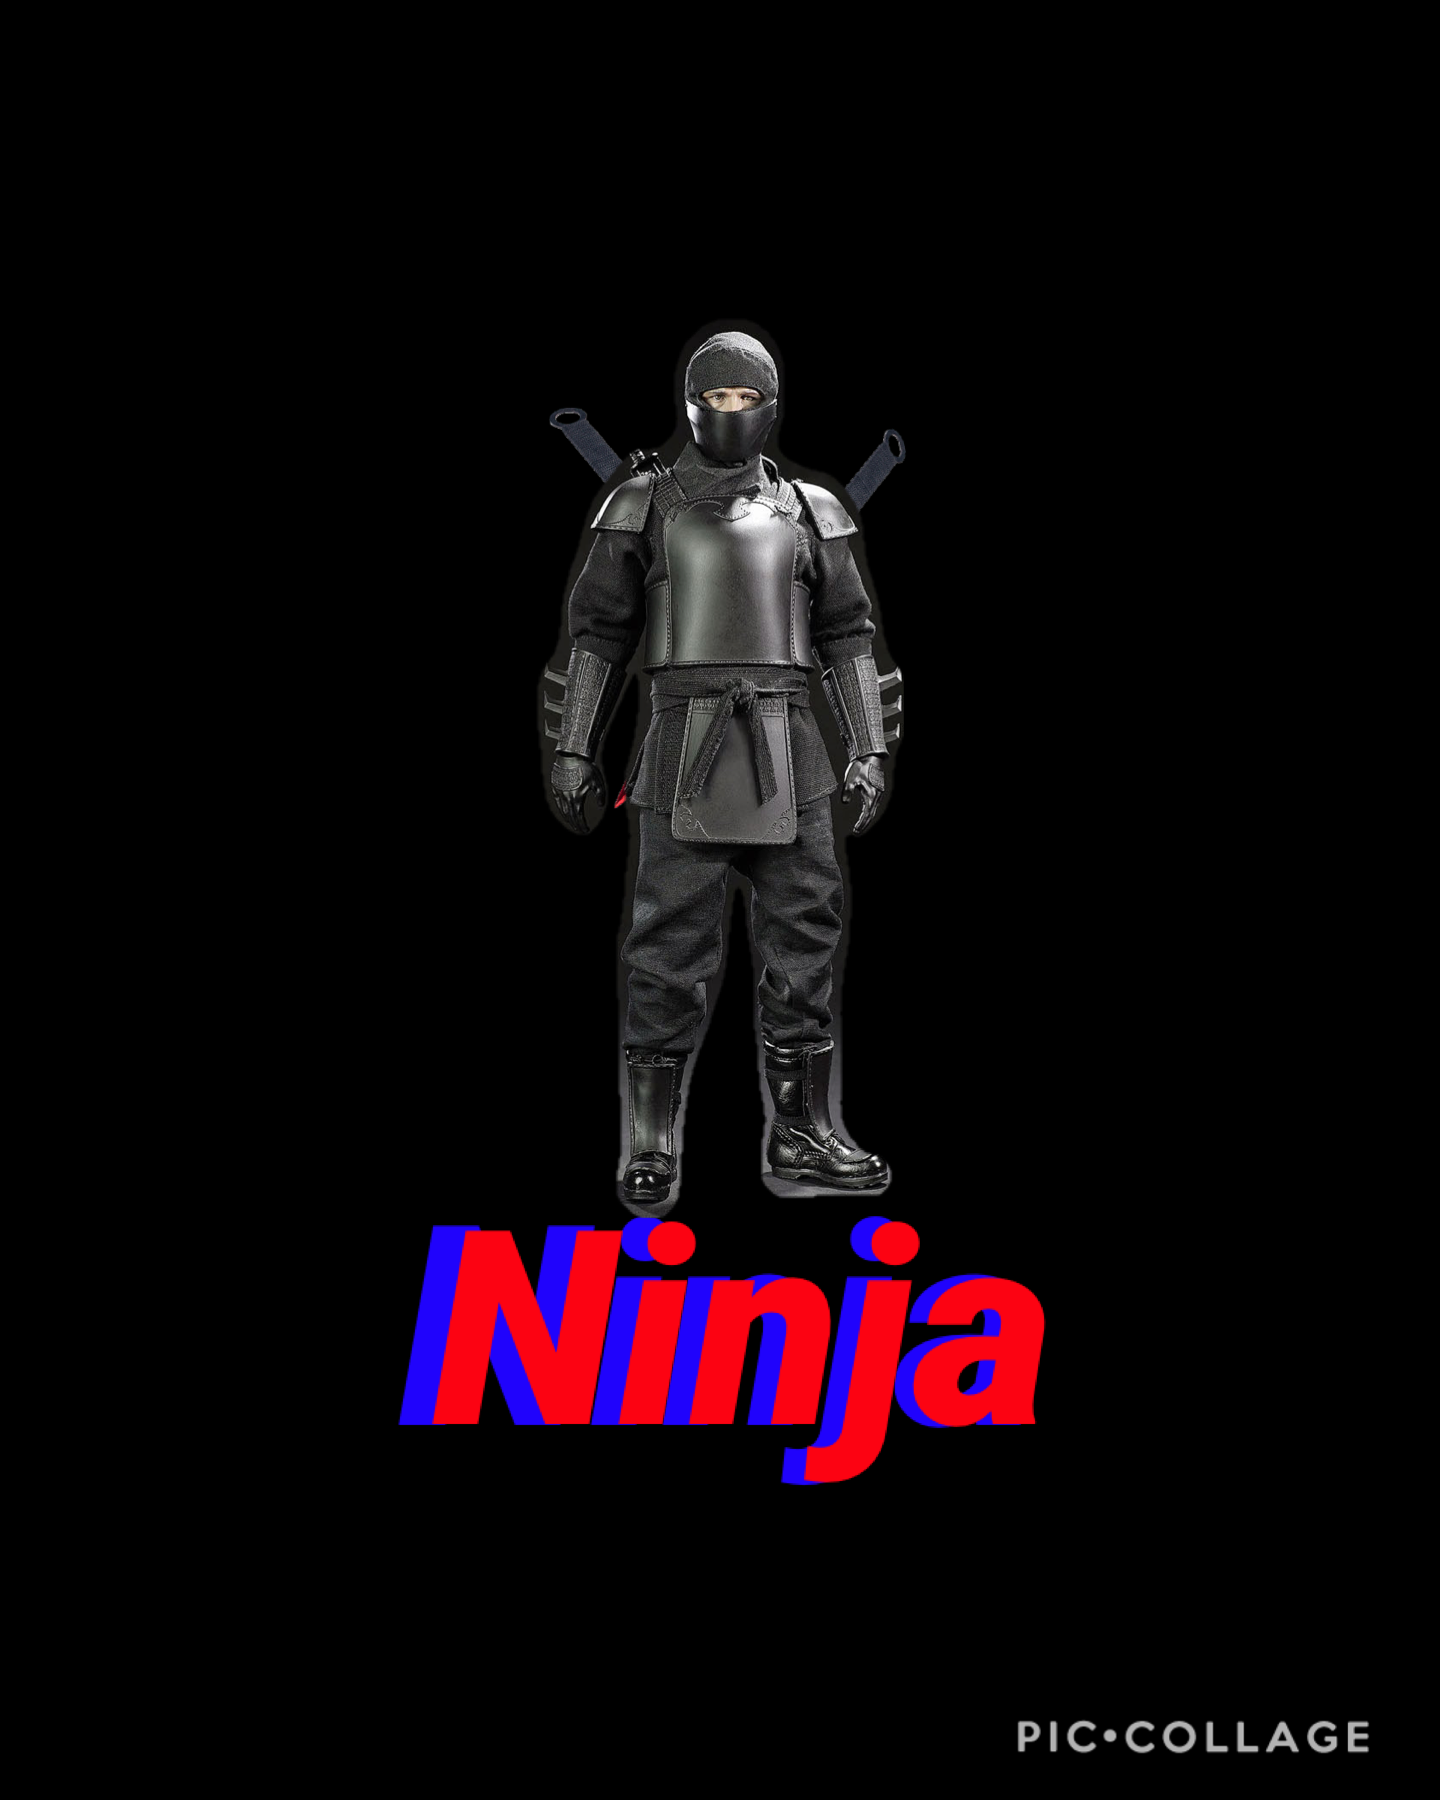 Ninja
